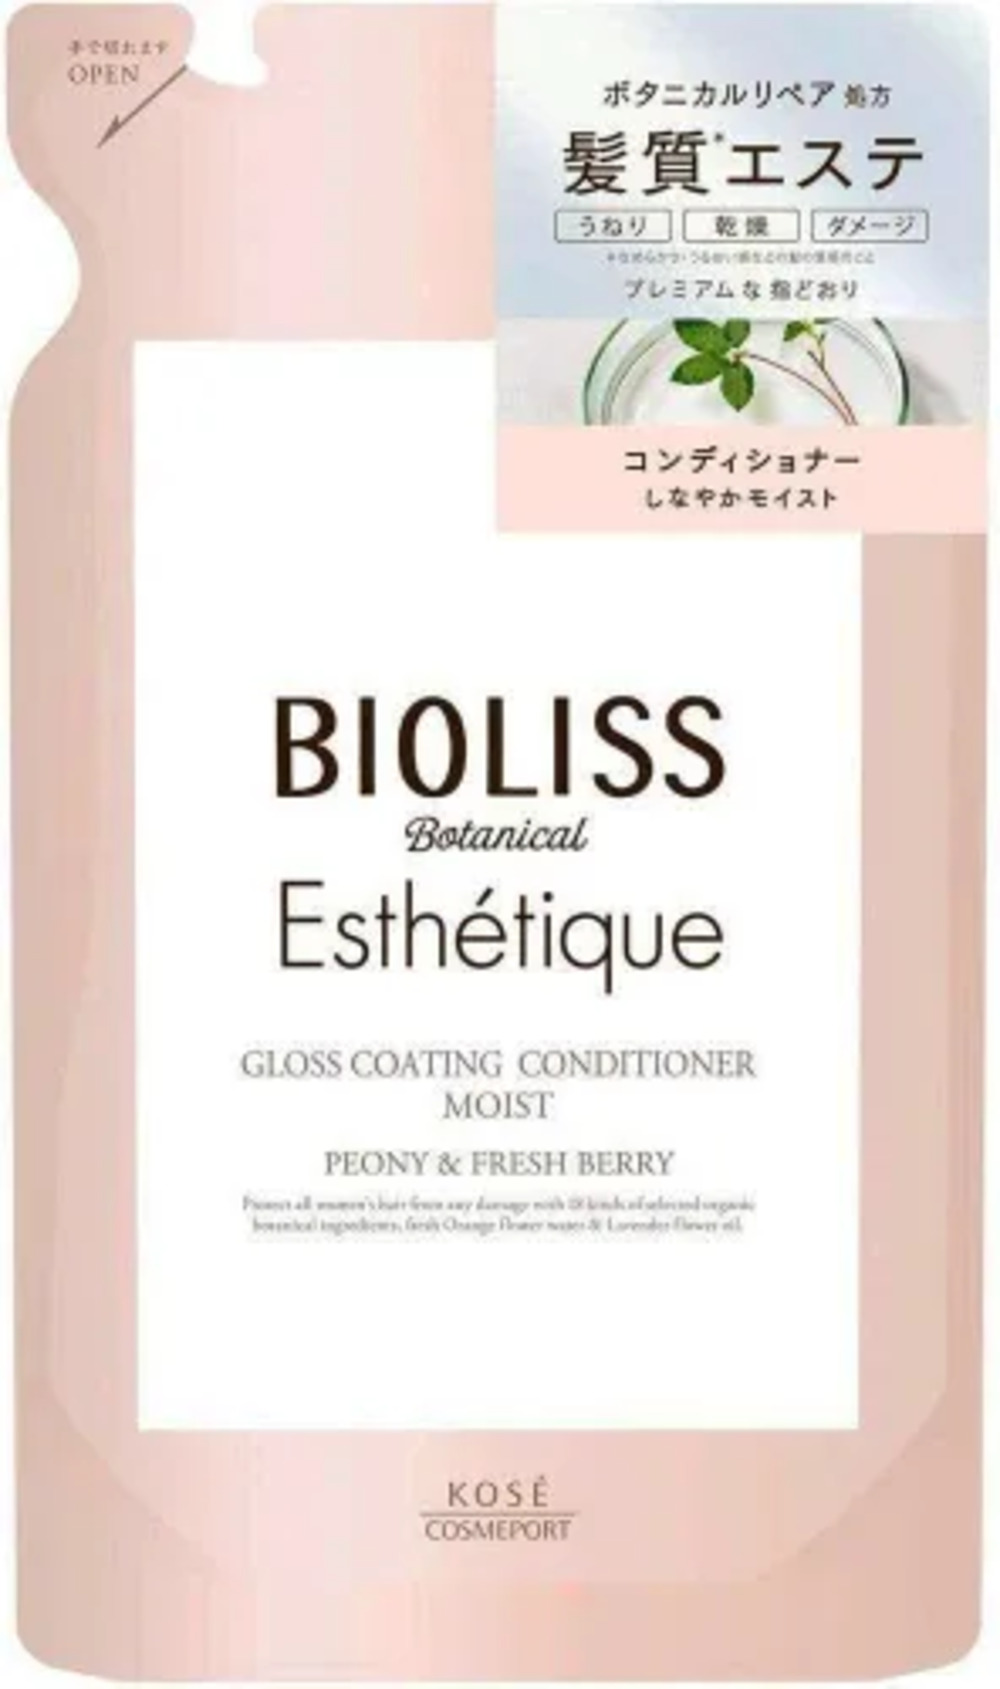 Bioliss botanical esthetique gloss coating кондиционер для волос увлажняющий 400 мл